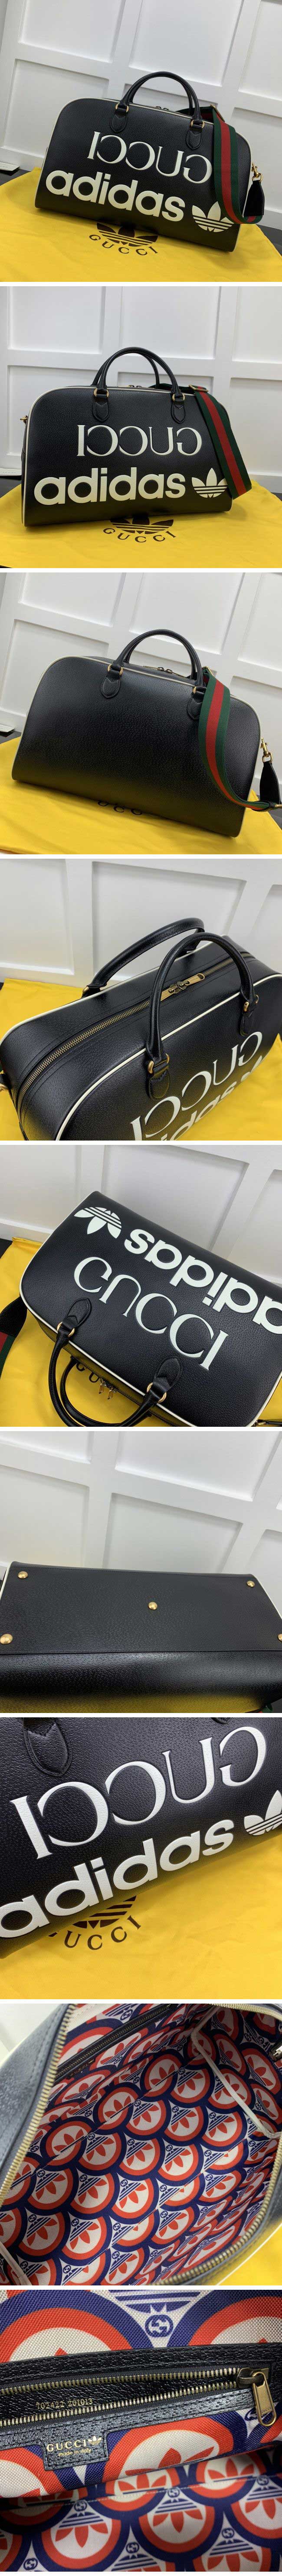 Gucci x Adidas Print Travel Bag Large Black グッチ x アディダス プリント トラベルバッグ ラージ ブラック【N級】